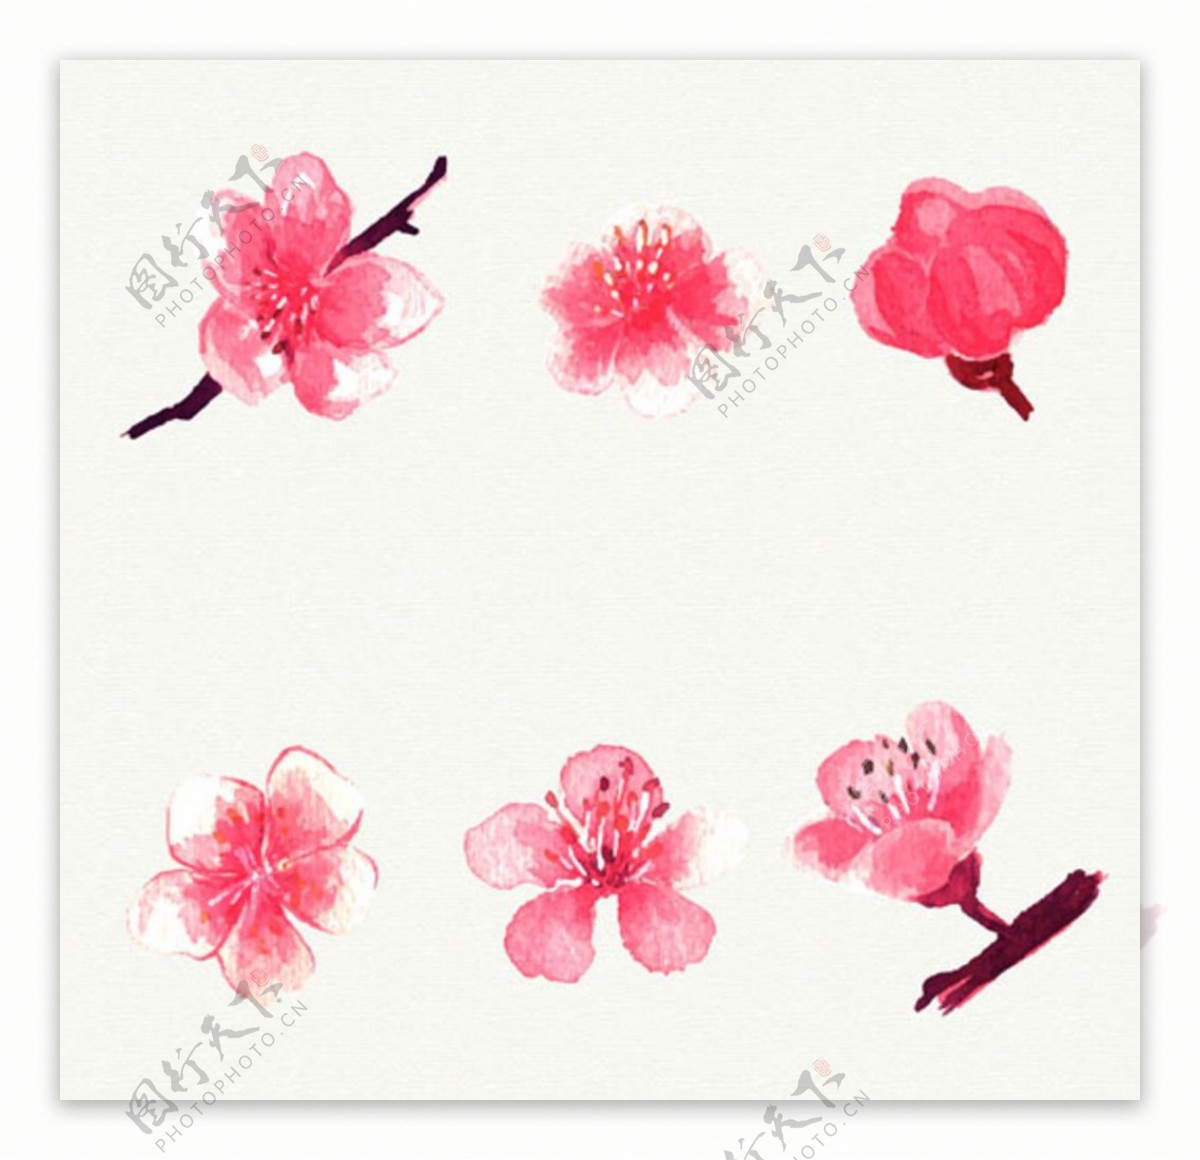 六朵手绘水彩樱花